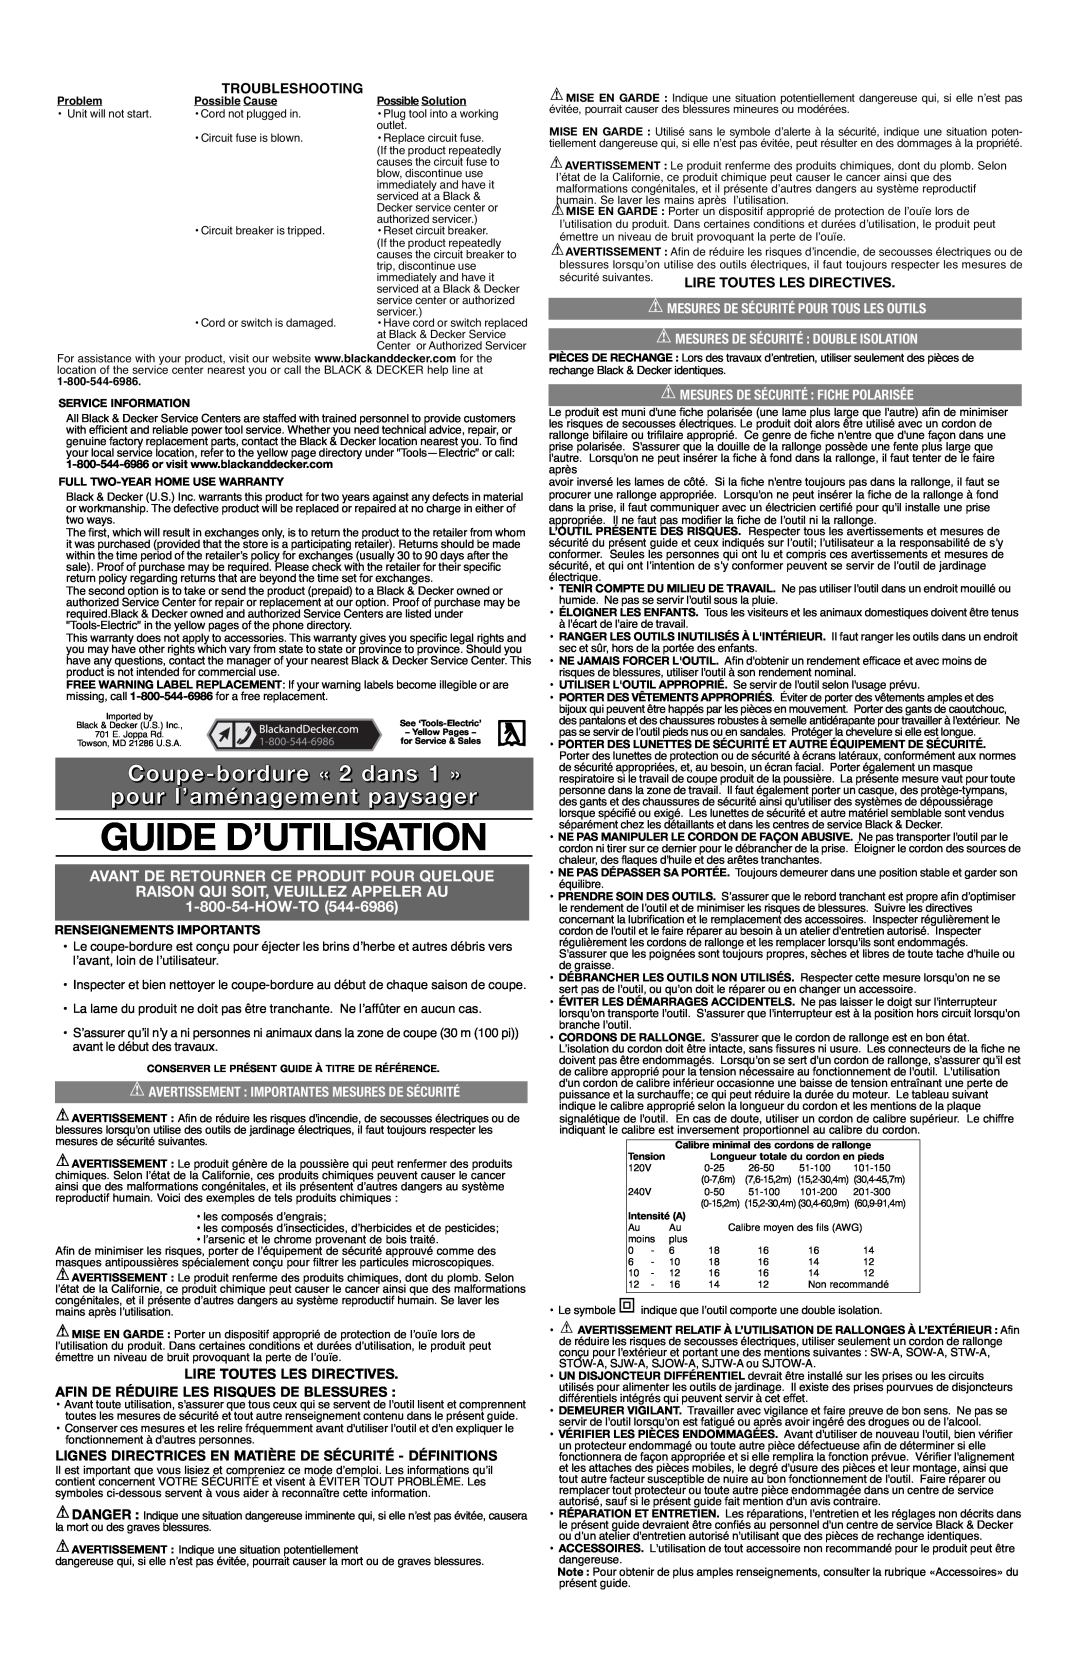 Black & Decker LE750 Type 4 Guide D’Utilisation, Avant De Retourner Ce Produit Pour Quelque, How-To, Troubleshooting 